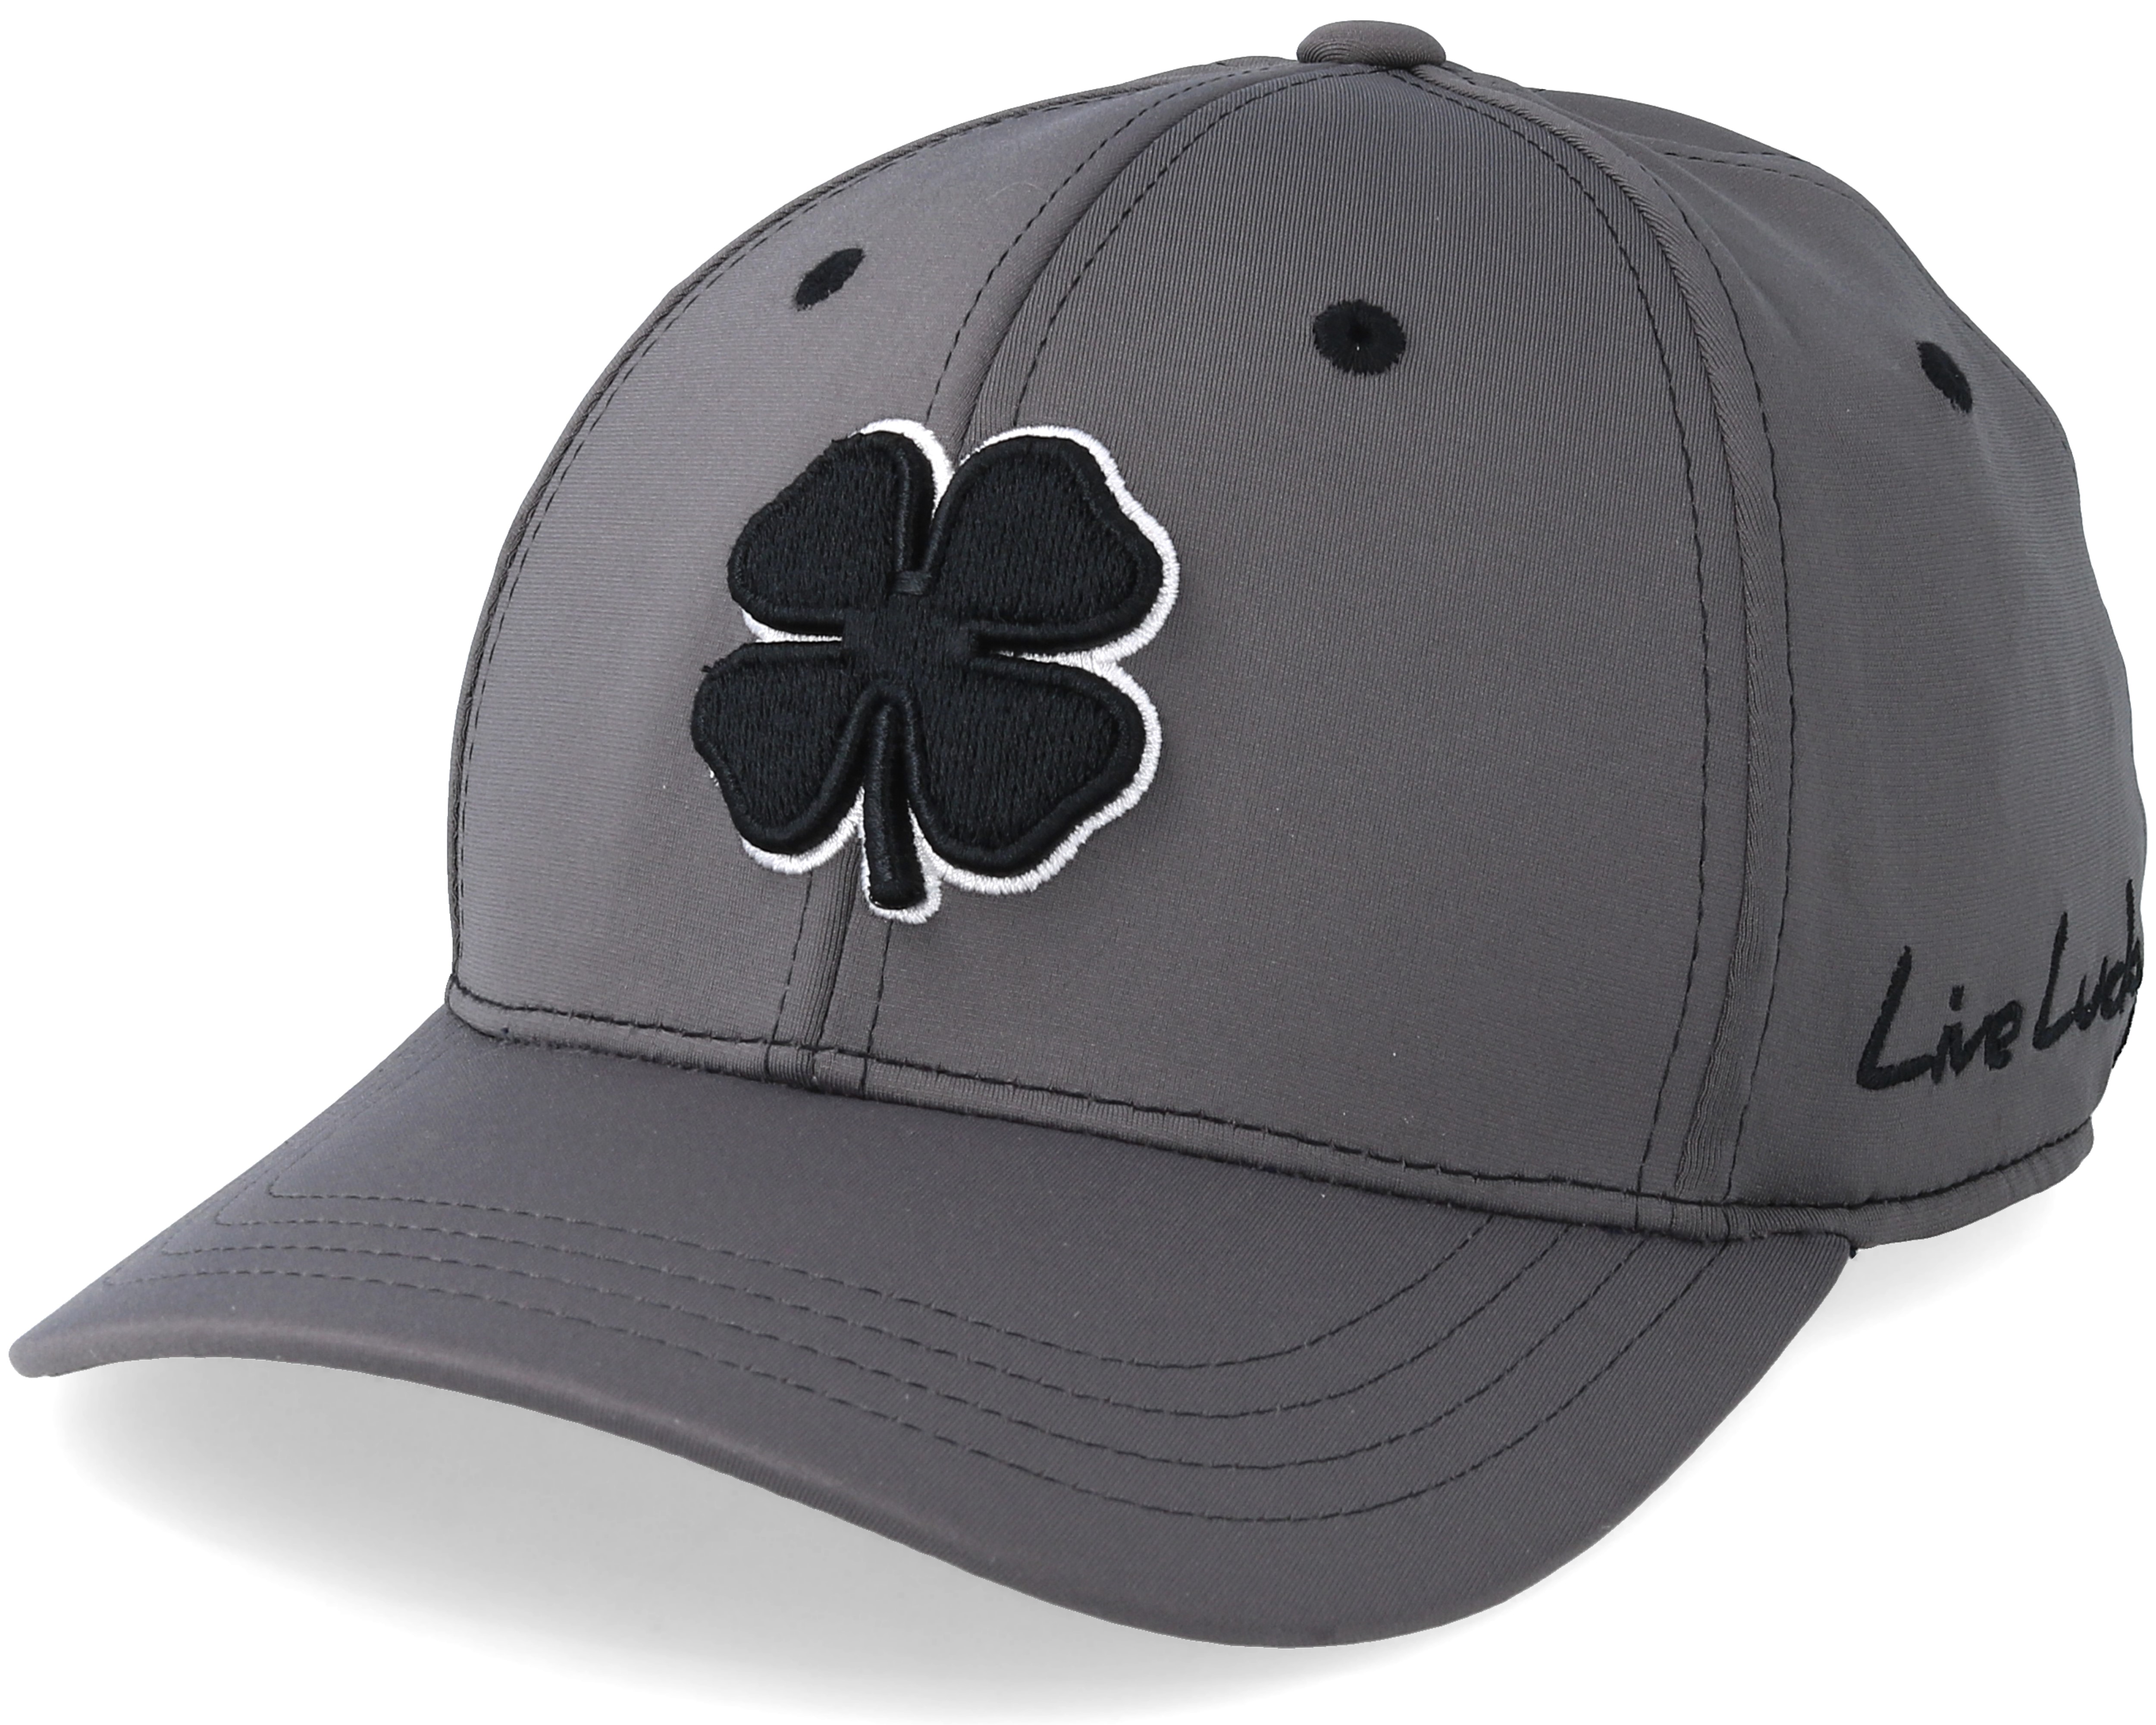 Premium Clover Black White/Charcoal Flexfit - Black Clover cap ...